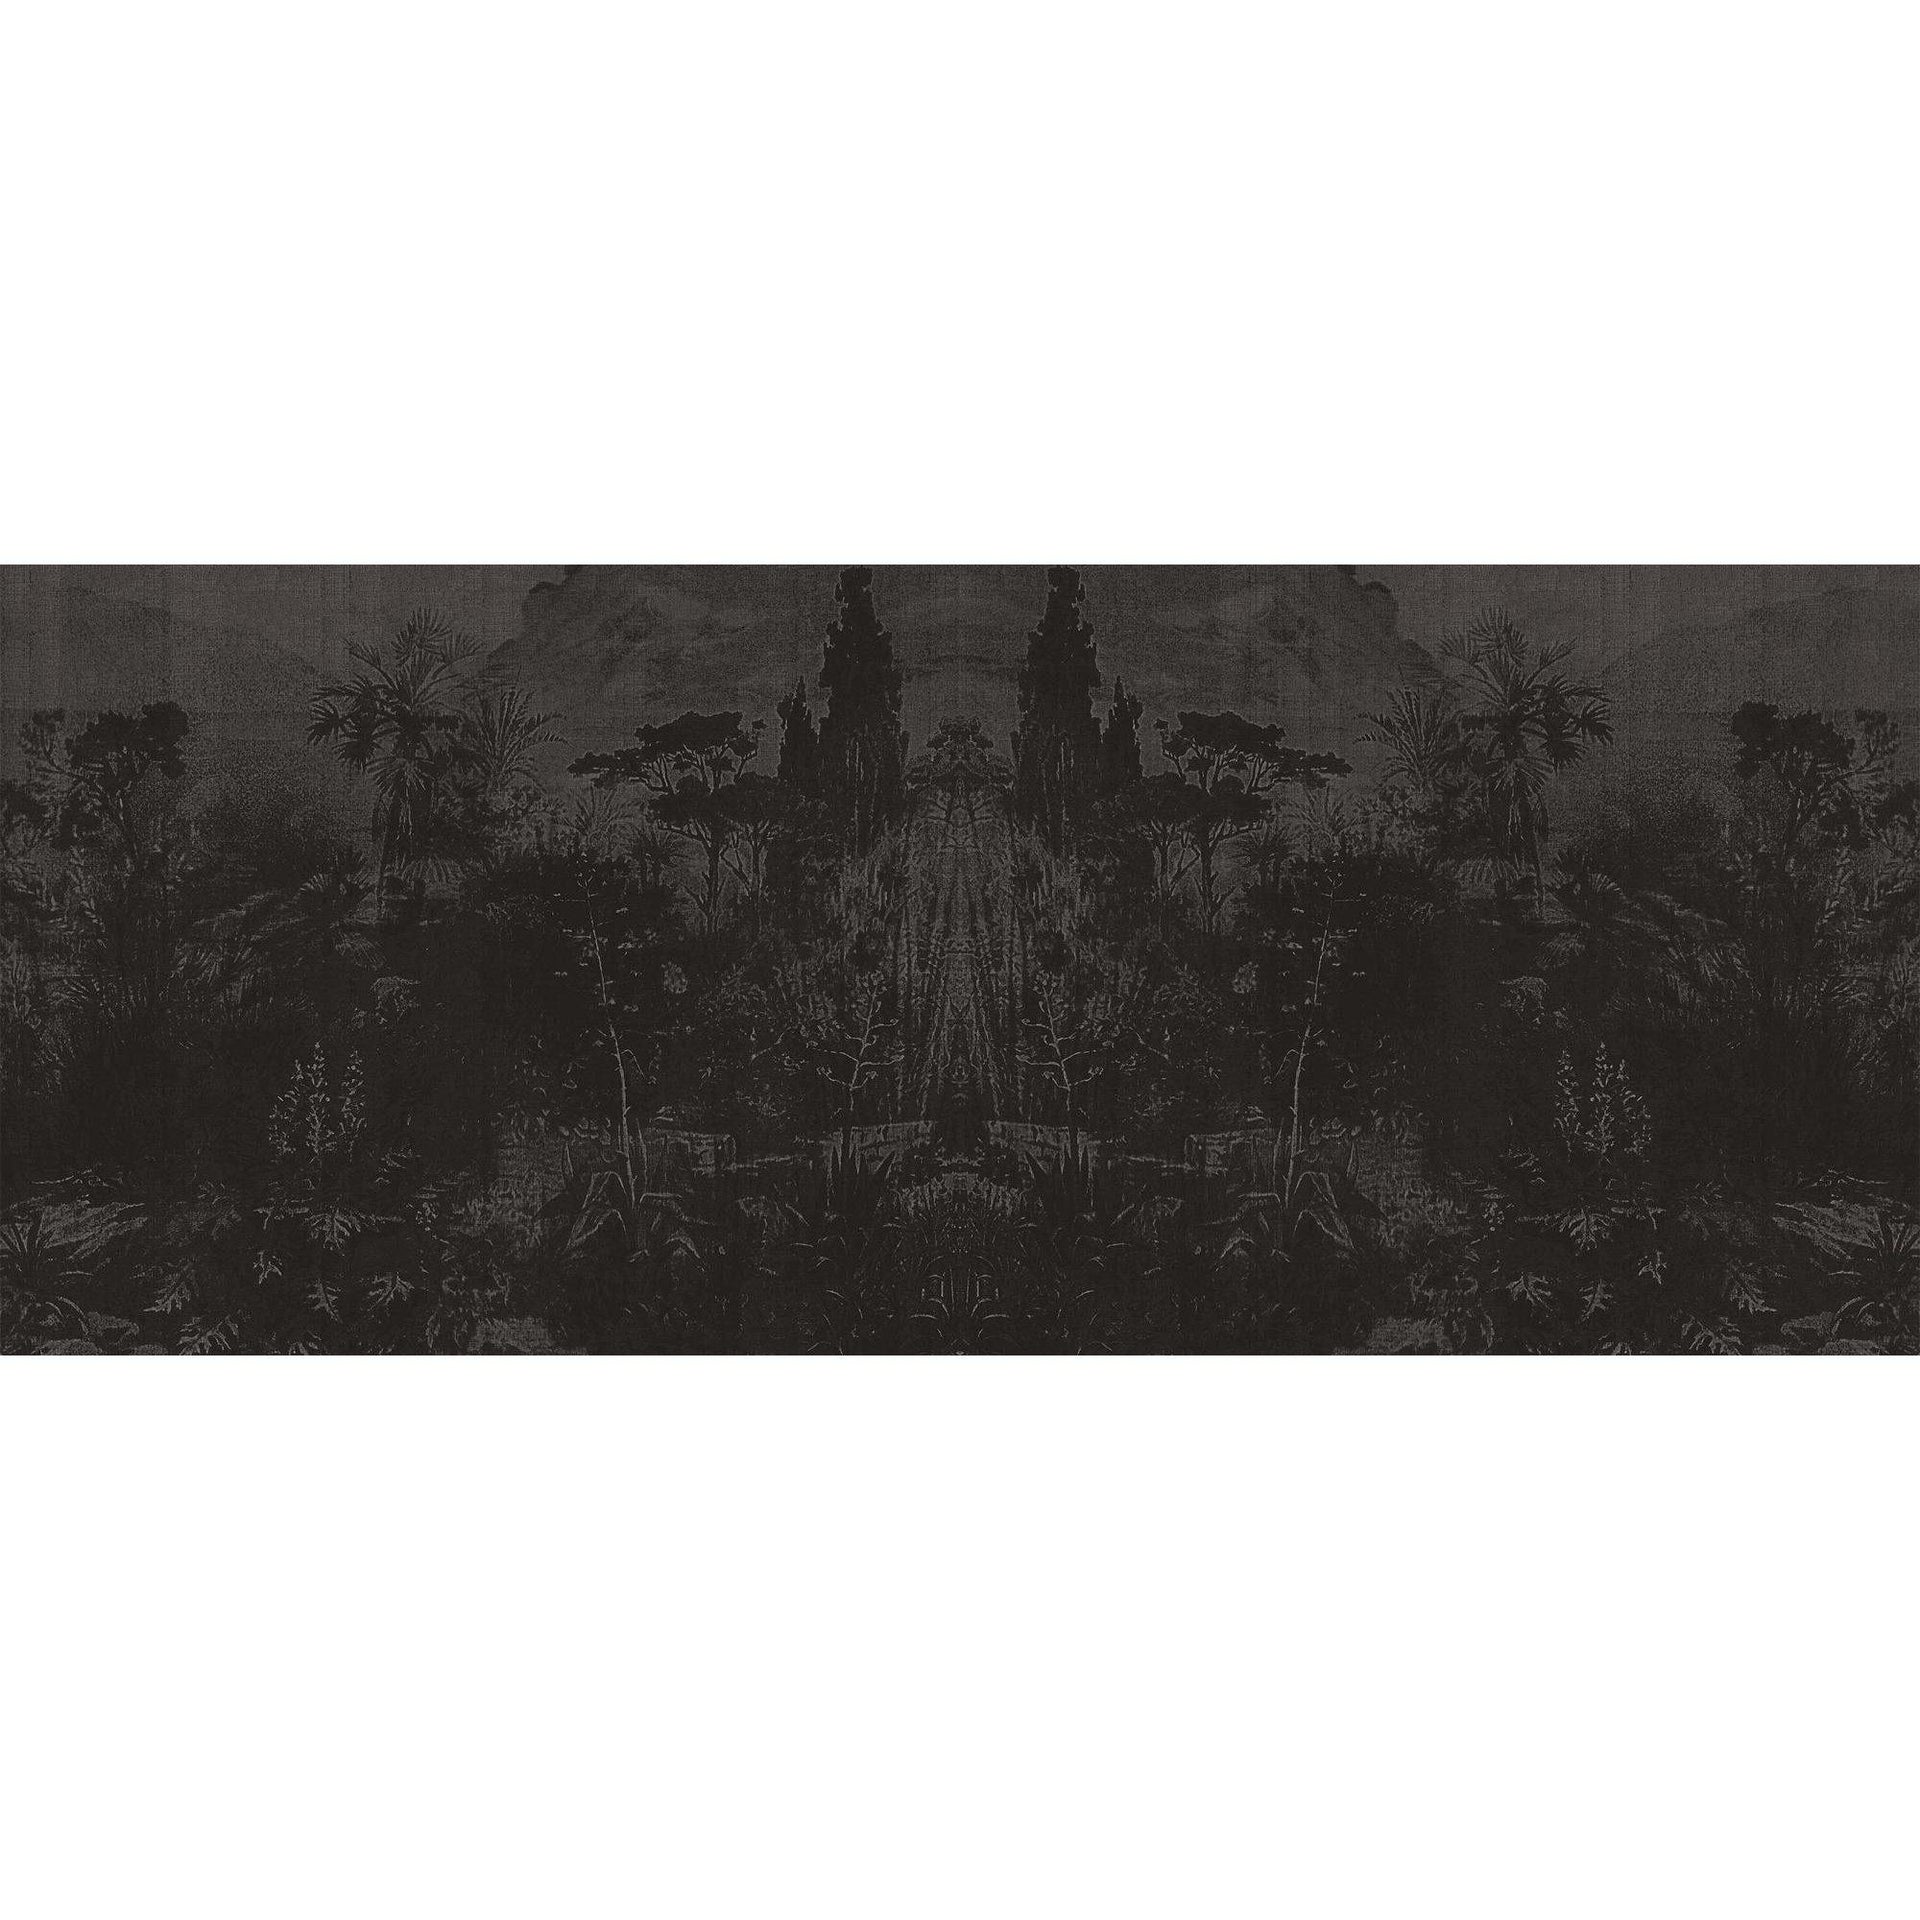 Panorama-Digital Wallpaper-London Art-Dark Grey-18064-02